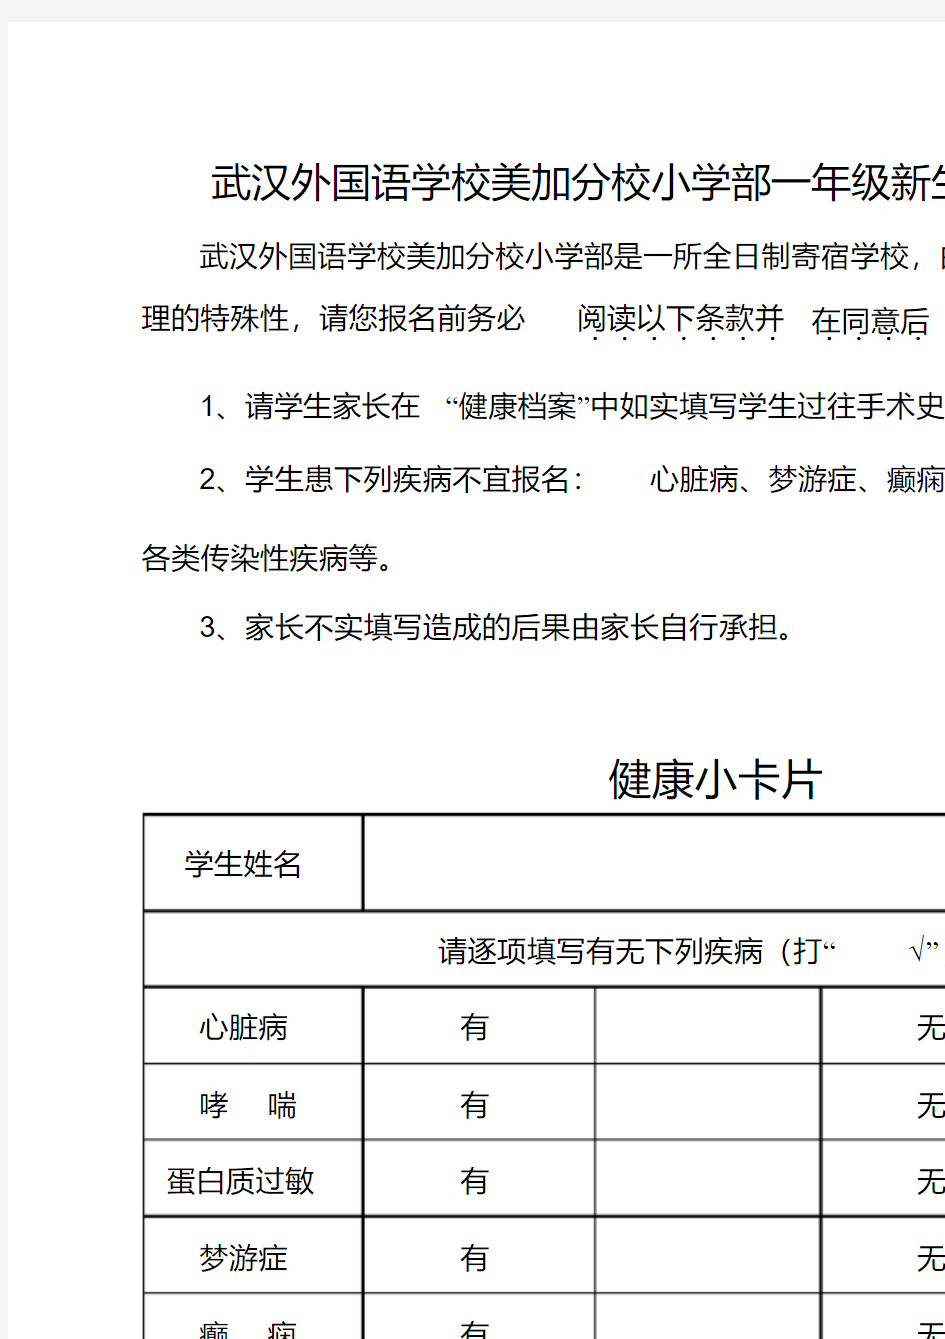 武汉外国语学校美加分校小学部一年级新生入学报名表.pdf